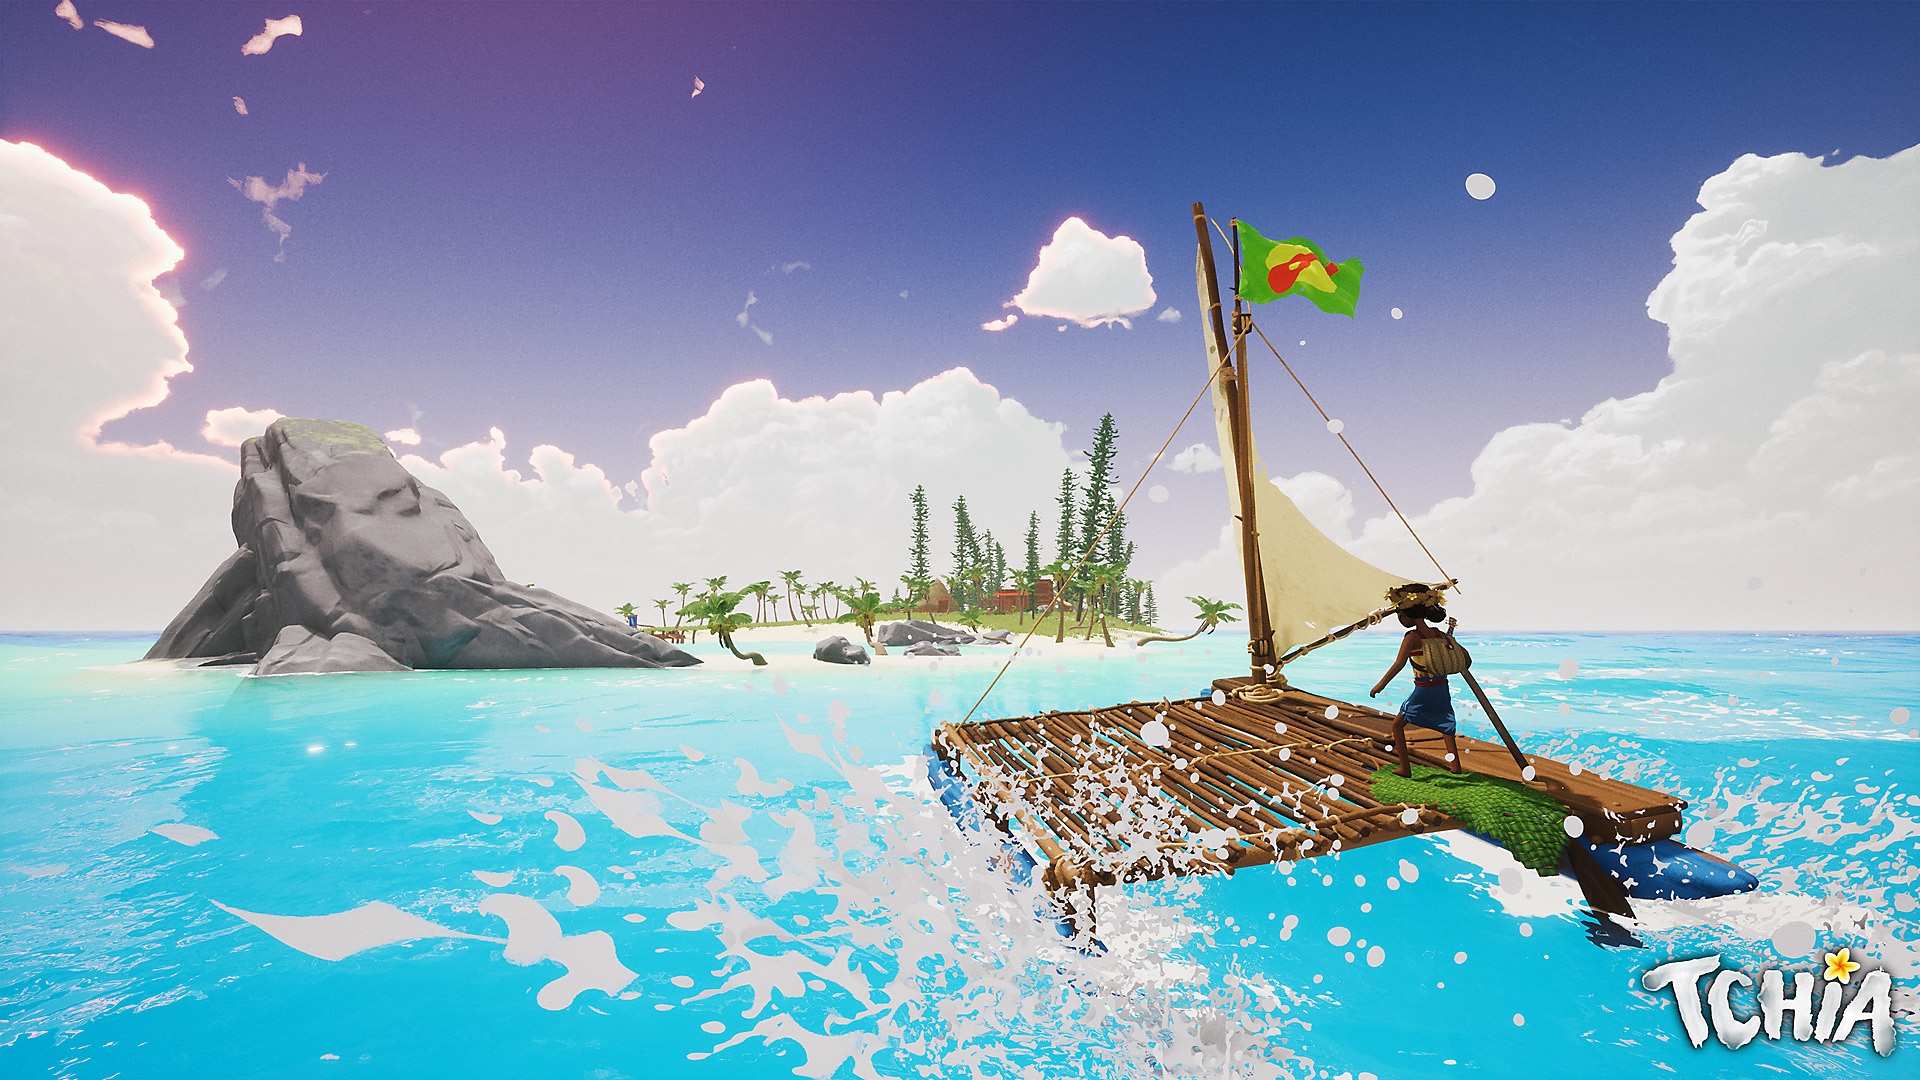 Tchia – snímek obrazovky s hlavní postavou plující na voru směrem k ostrovu